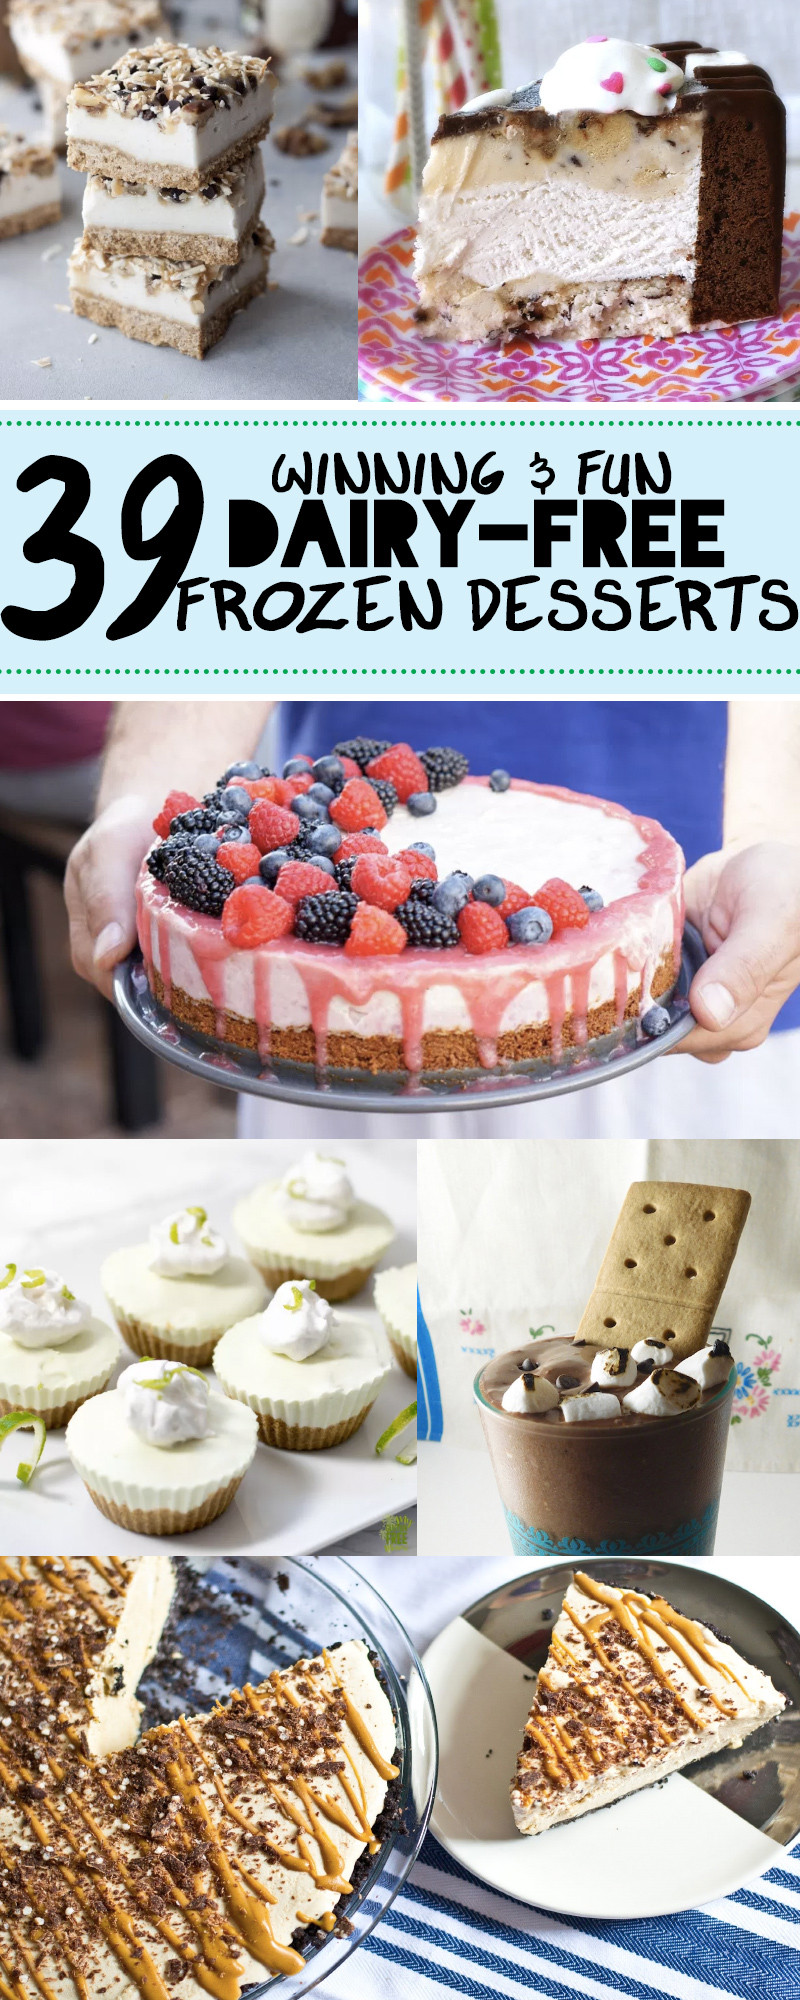 Dairy Free Frozen Desserts
 39 Dairy Free Frozen Dessert Recipes for FrozenFridays